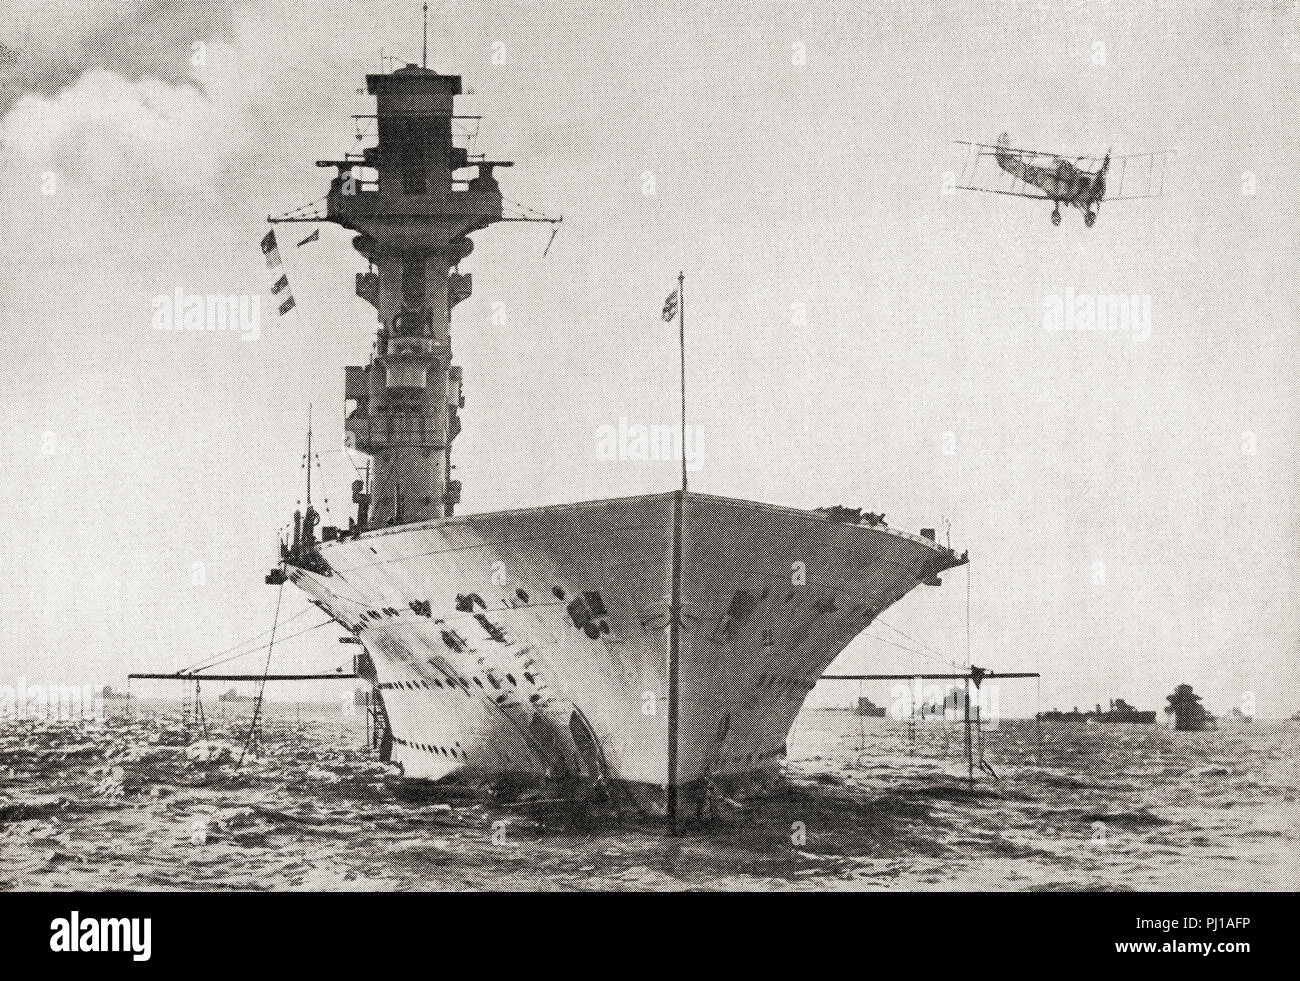 HMS Hermes, ein britischer Flugzeugträger für die Royal Navy, erstes Schiff der Welt wie ein Flugzeugträger zu entworfen werden gebaut, sie durch japanische Flugzeuge versenkt wurde, den 9. April 1942. Aus dem Buch von Schiffen, veröffentlicht C 1920. Stockfoto